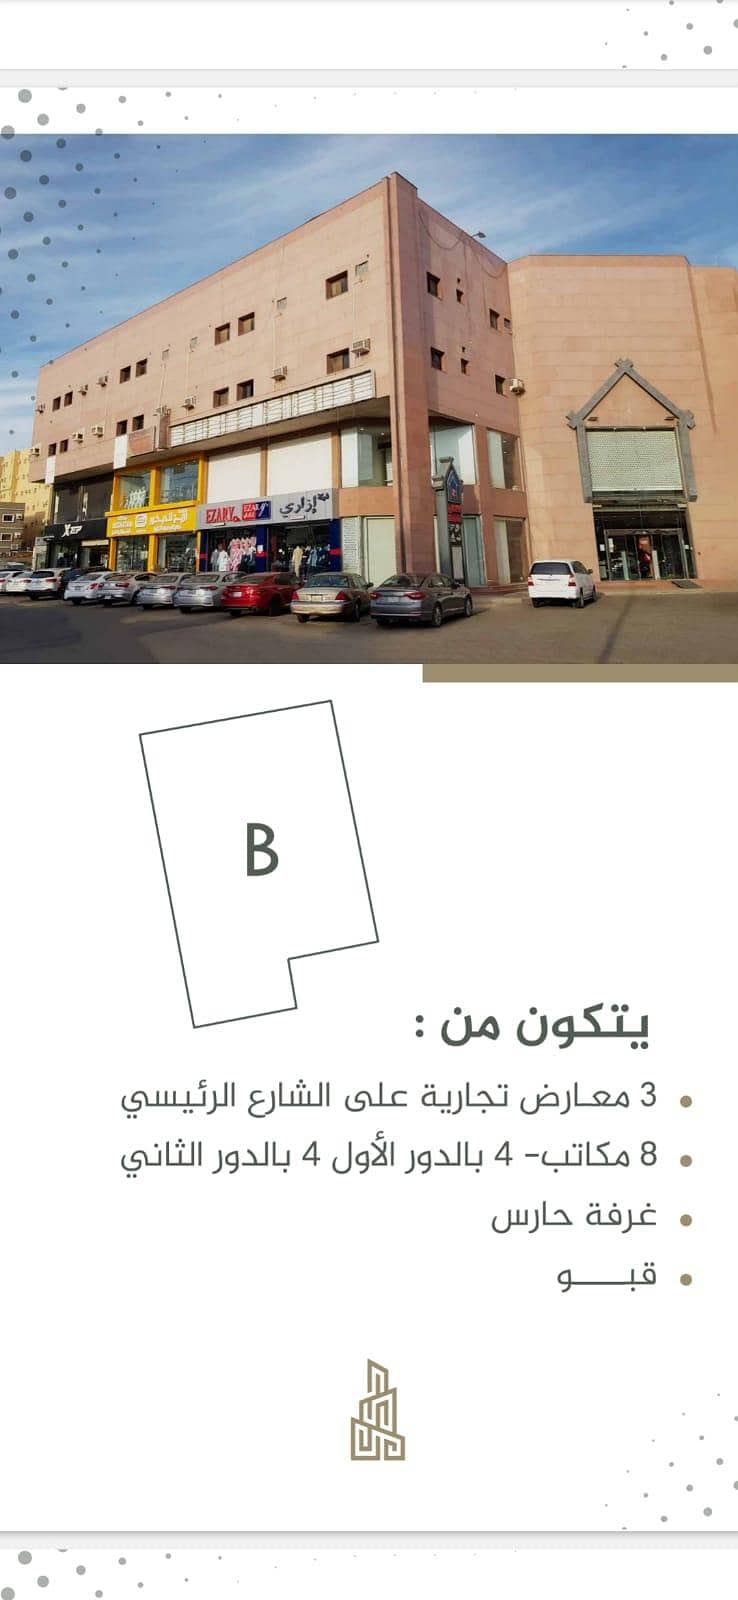 عمارة تجارية سكنية للبيع على شارع المكرونة حي مشرفة، جدة